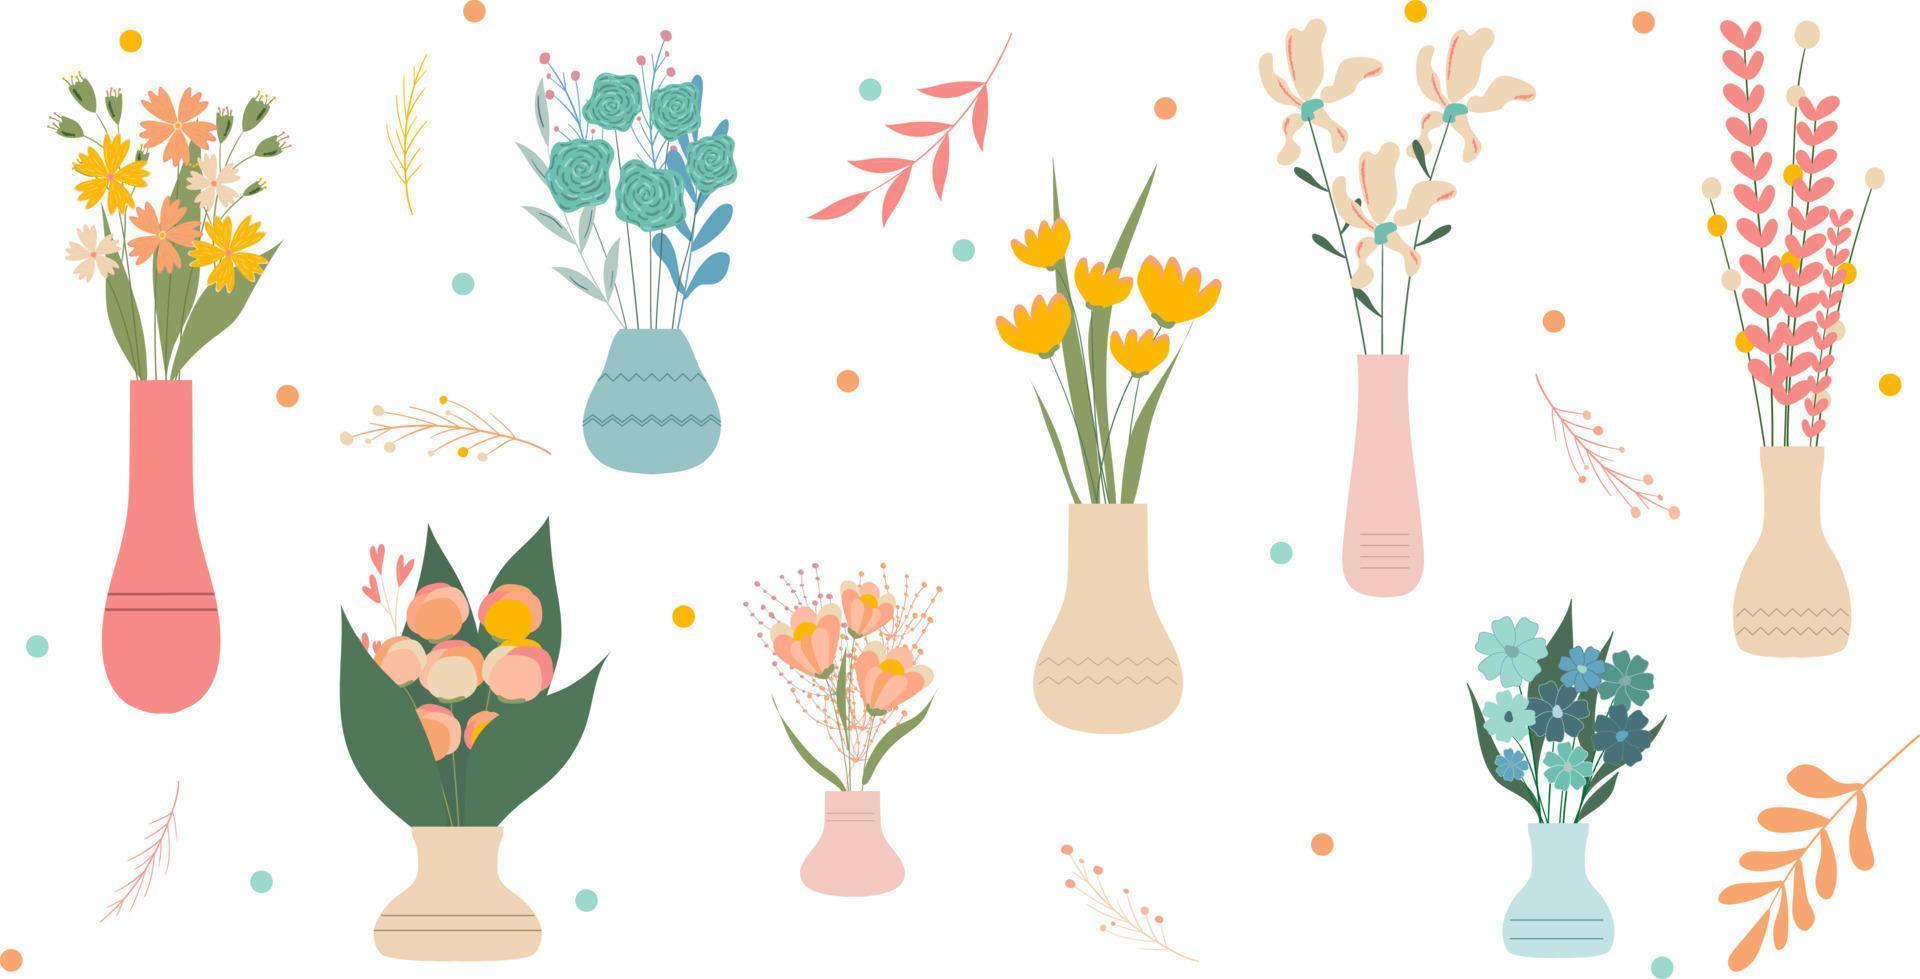 Reihe von wilden und blühenden Gartenblumen im Vasenhintergrund. Bündel Blumensträuße. Reihe von dekorativen floralen Designelementen. flache Cartoon-Vektor-Illustration. vektor